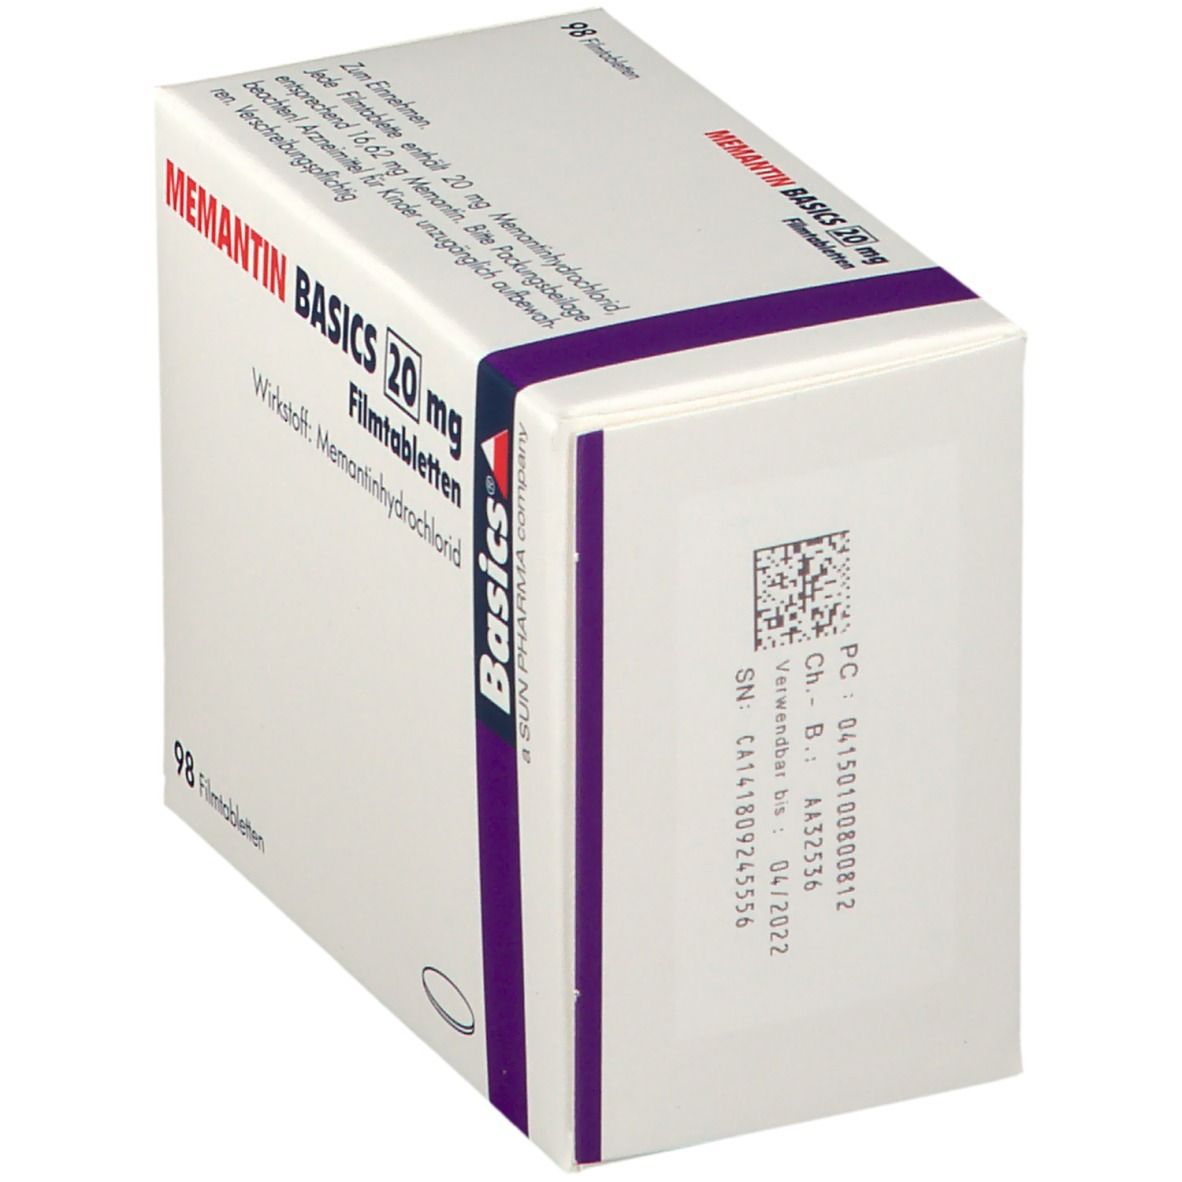 MEMANTIN BASICS 20 mg